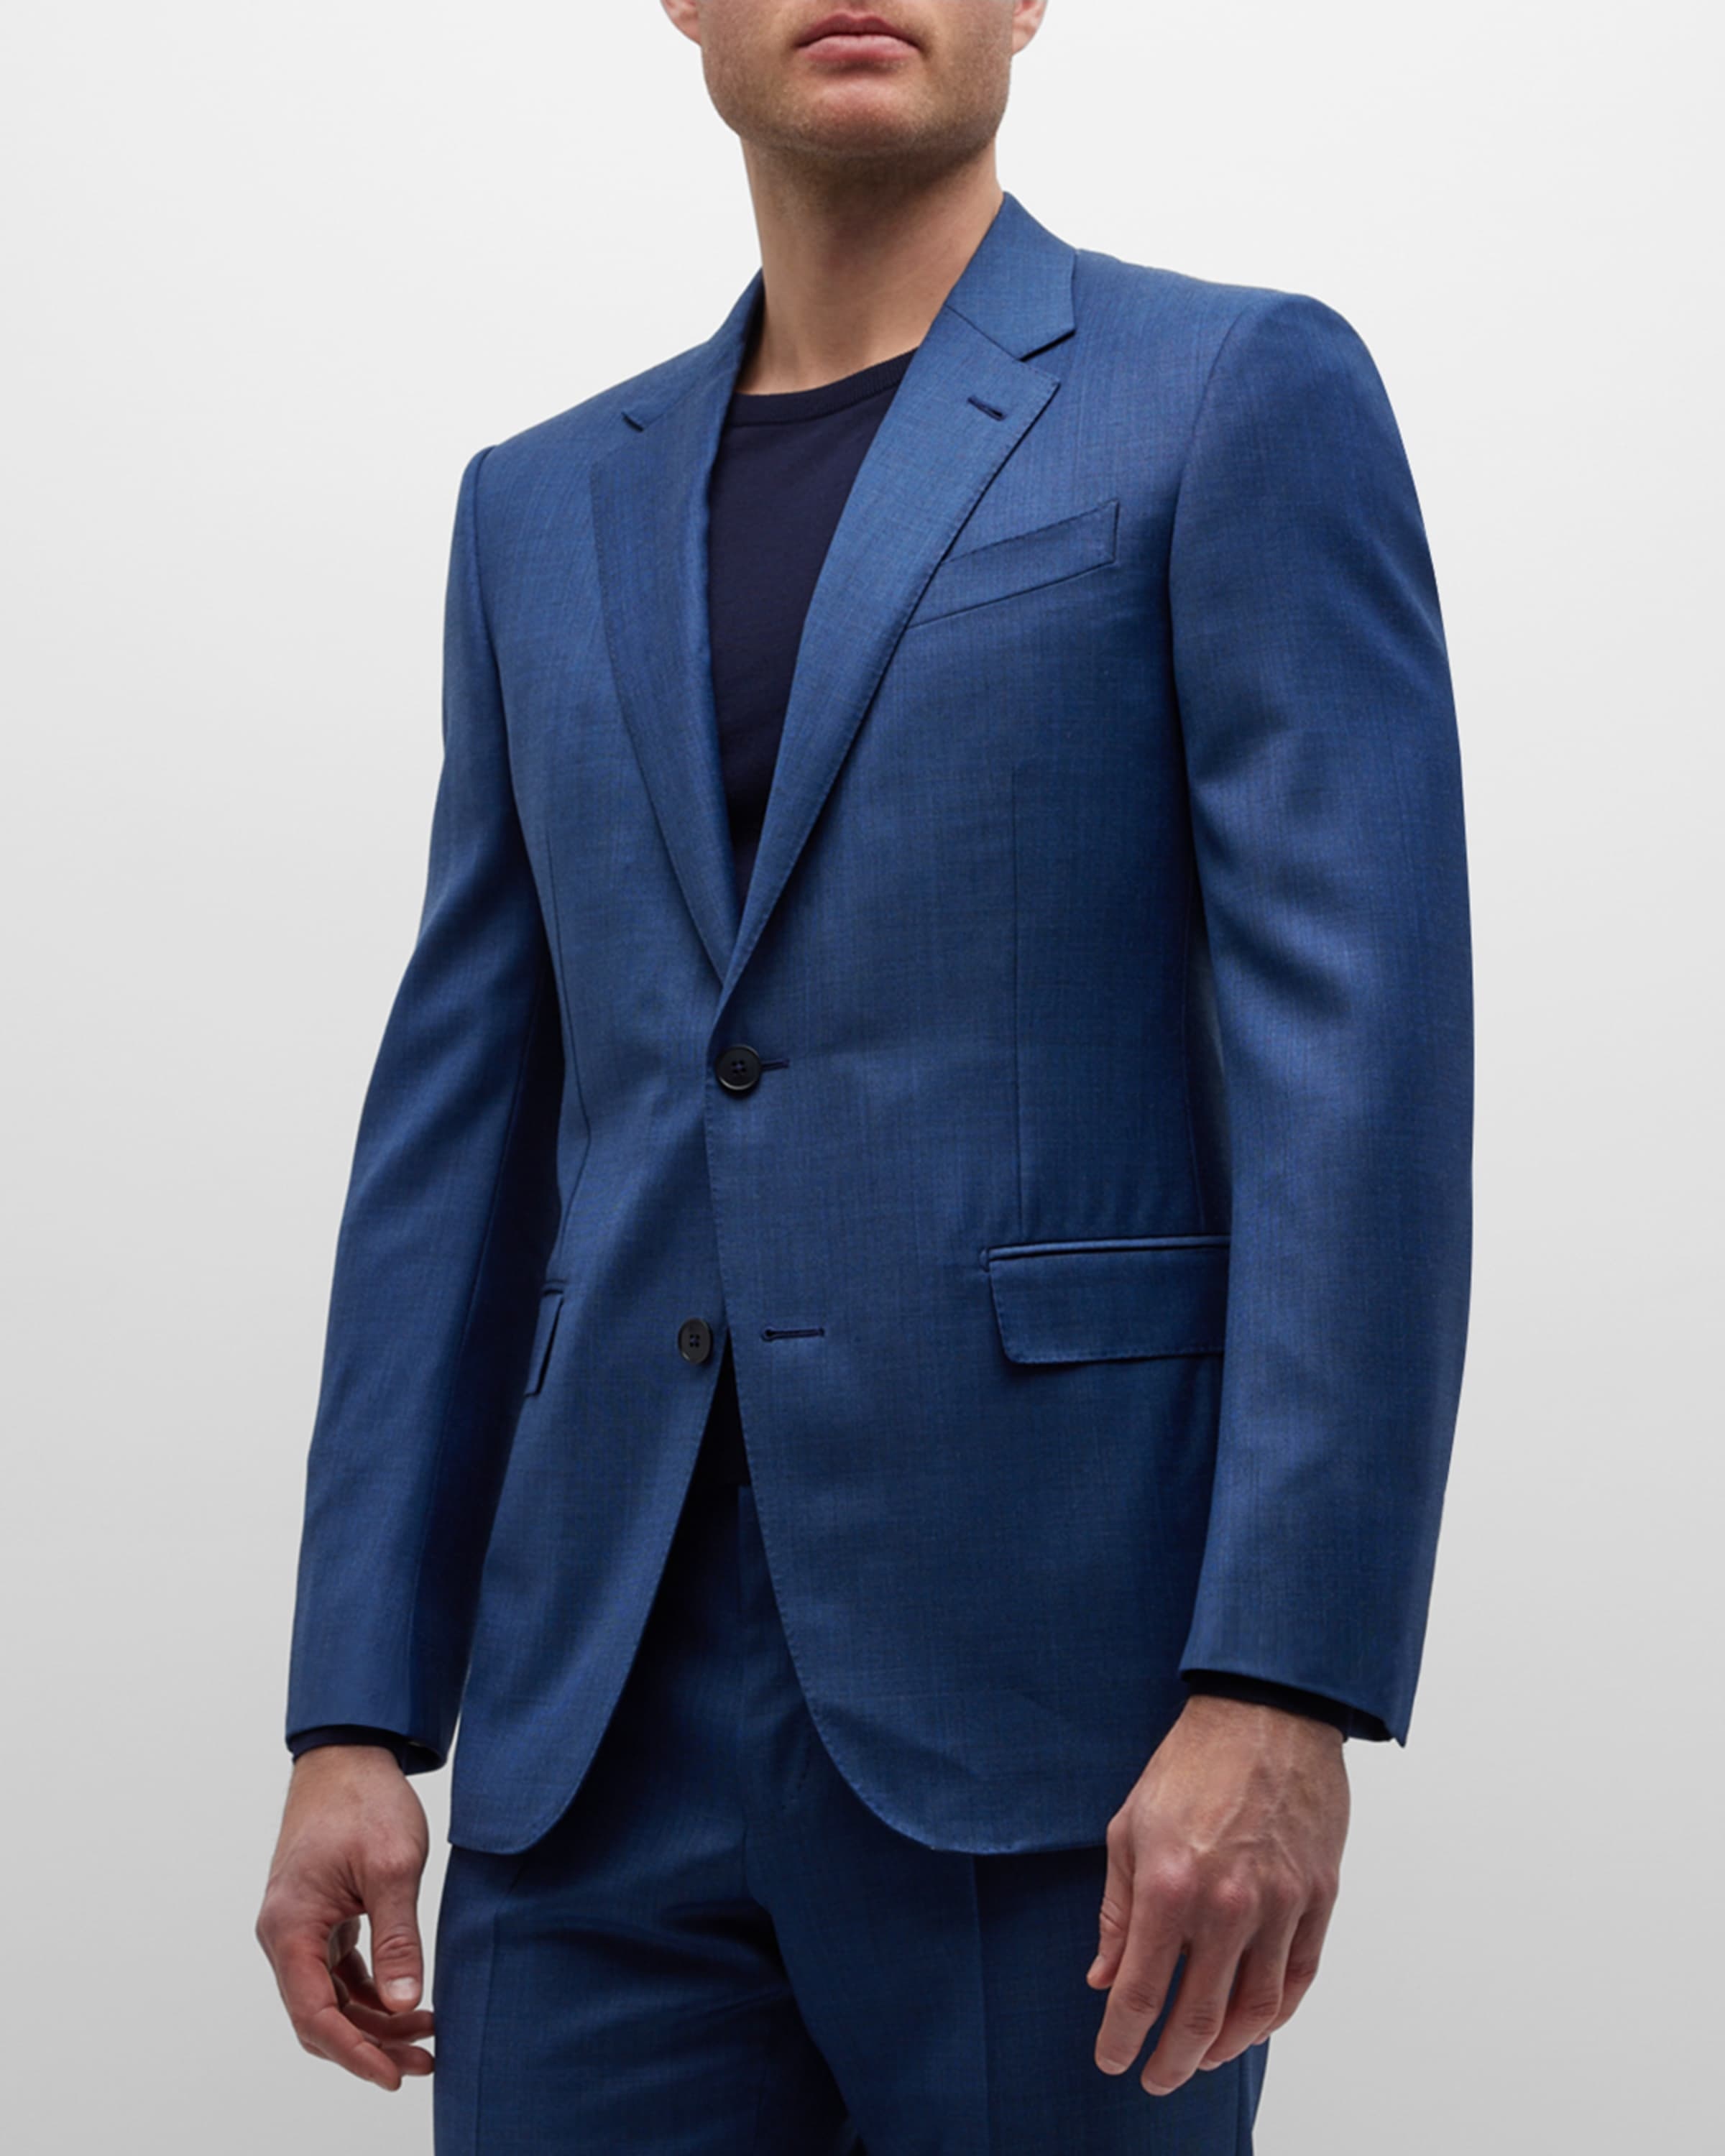 Men's Solid Wool Classic-Fit Suit - 5